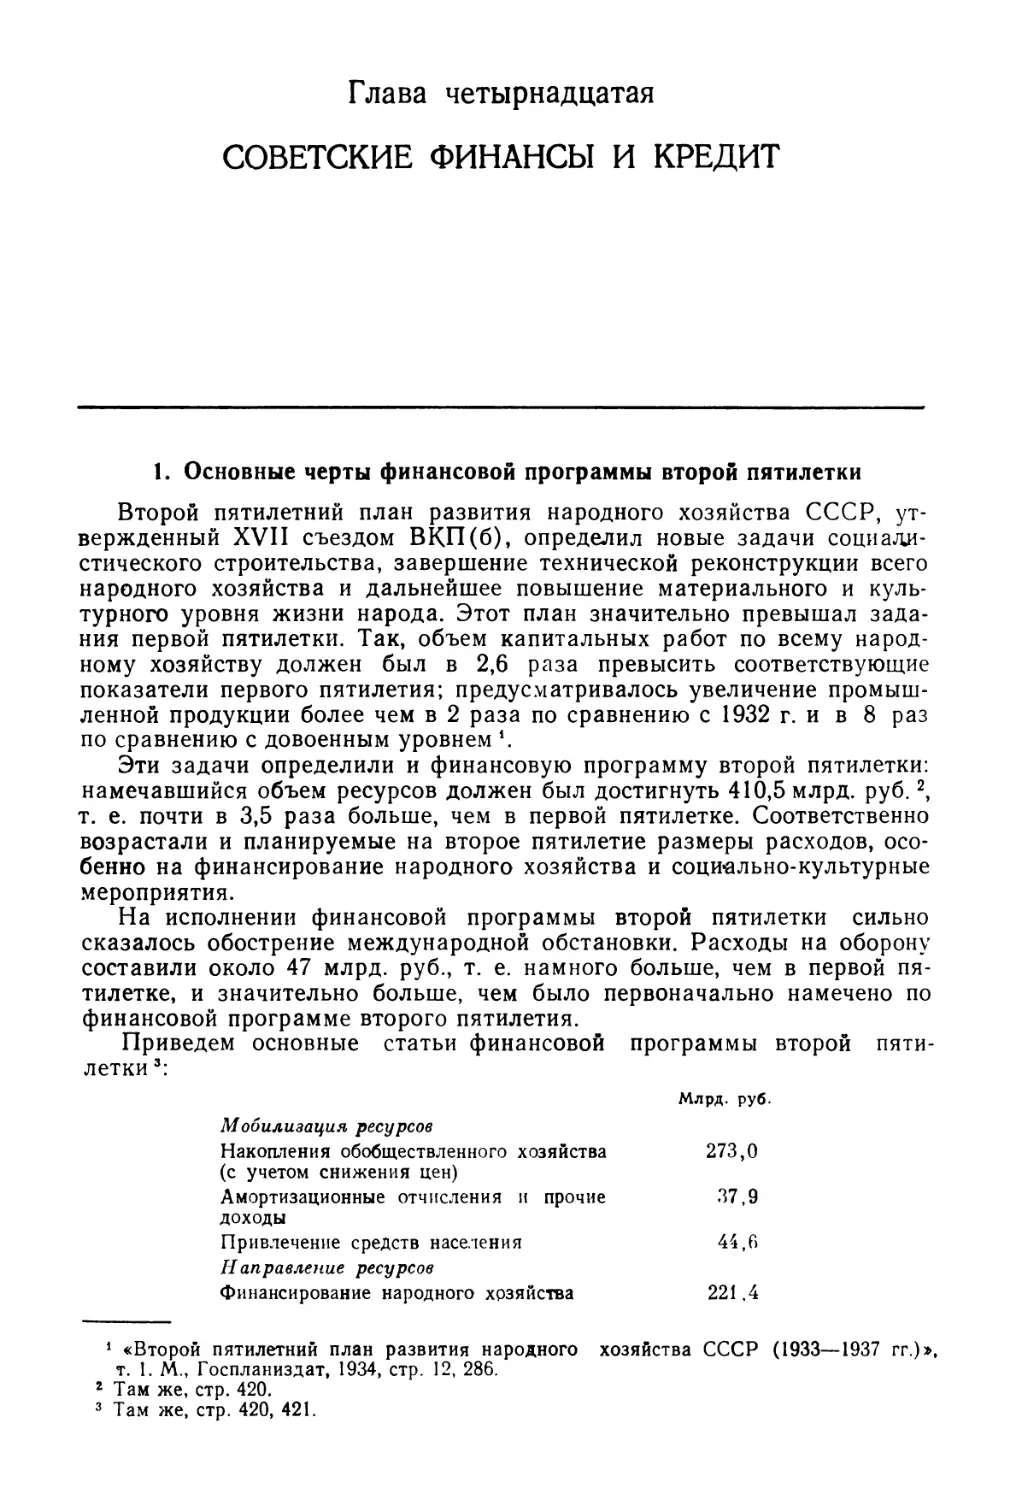 Глава 14. Советские финансы и кредит